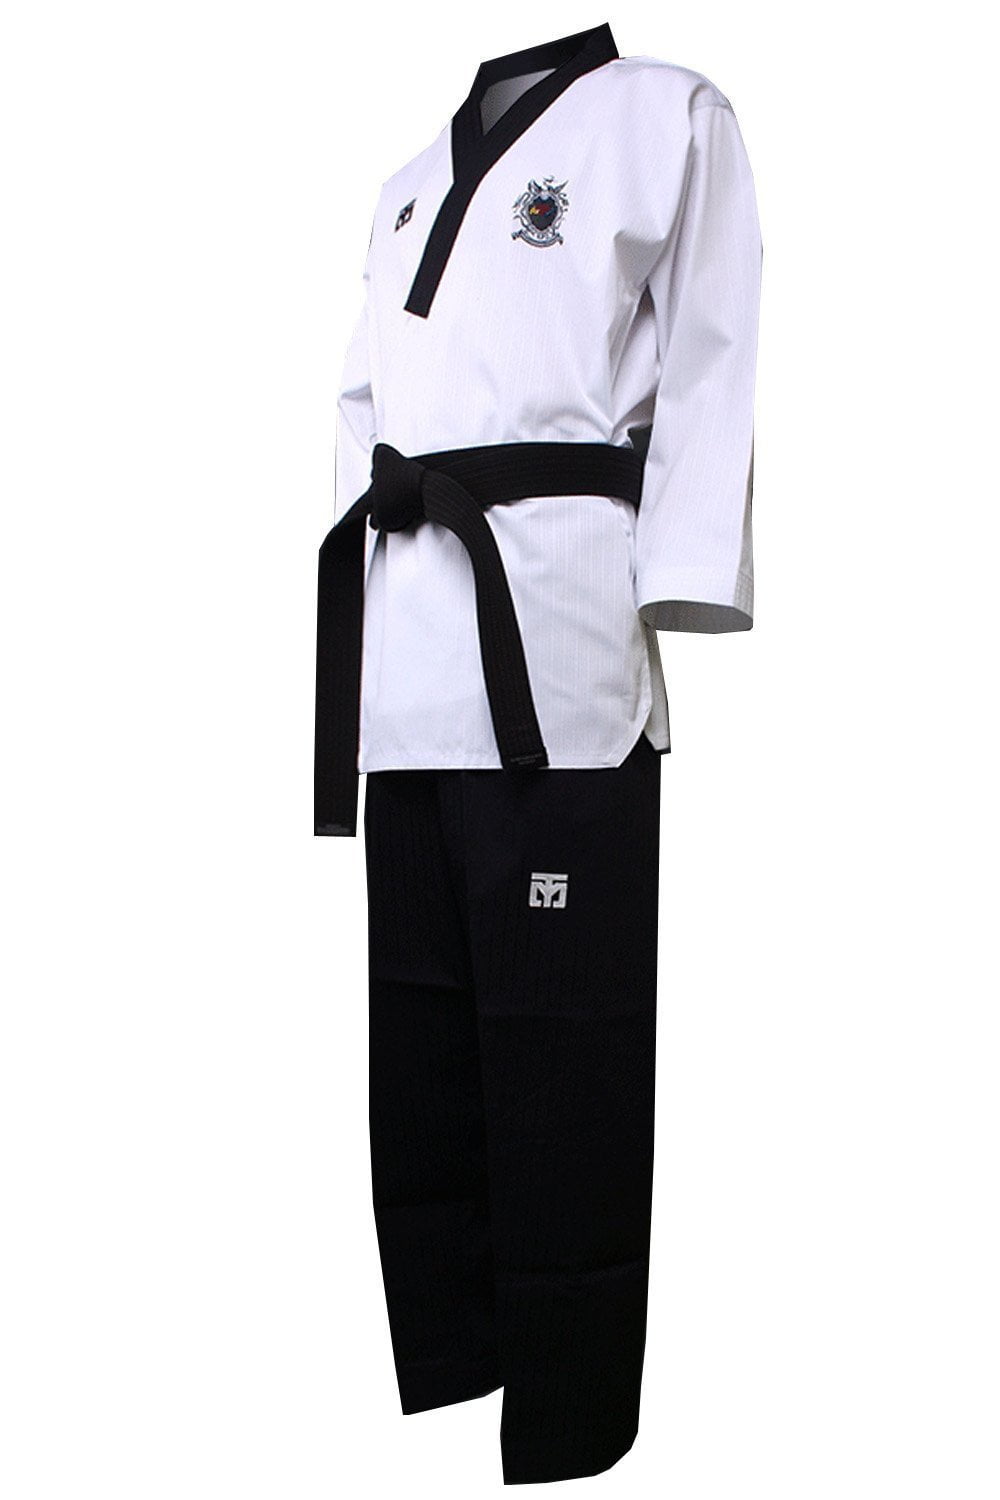 Adidas Taekwondo Poomsae Uniform Male 